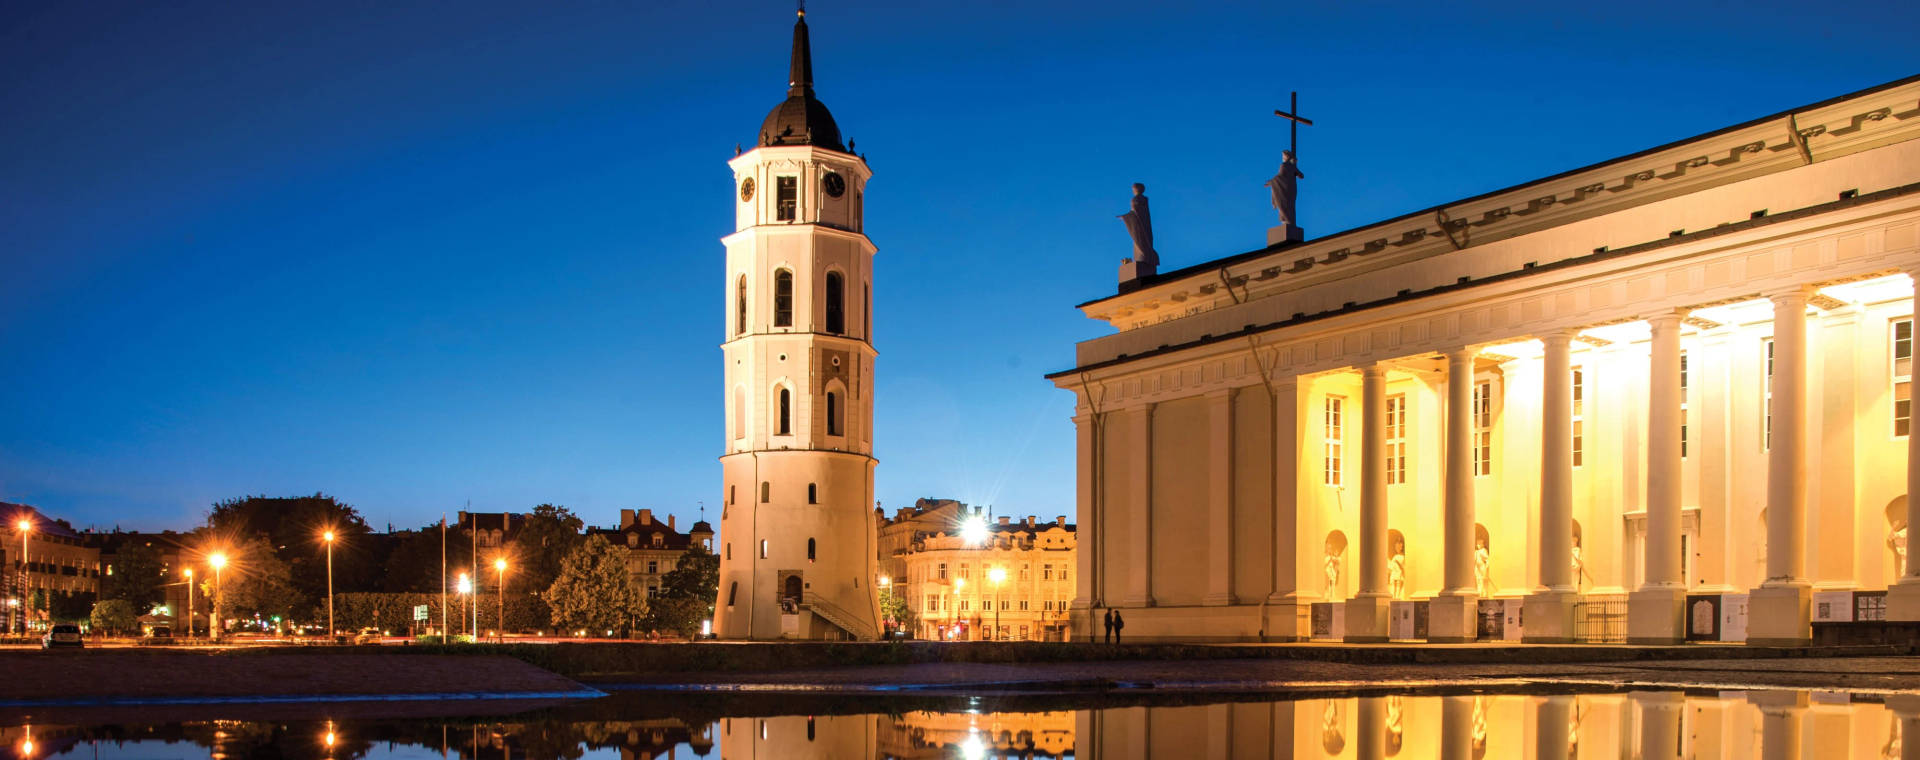 Vilniusplaza De La Catedral Fondo de pantalla